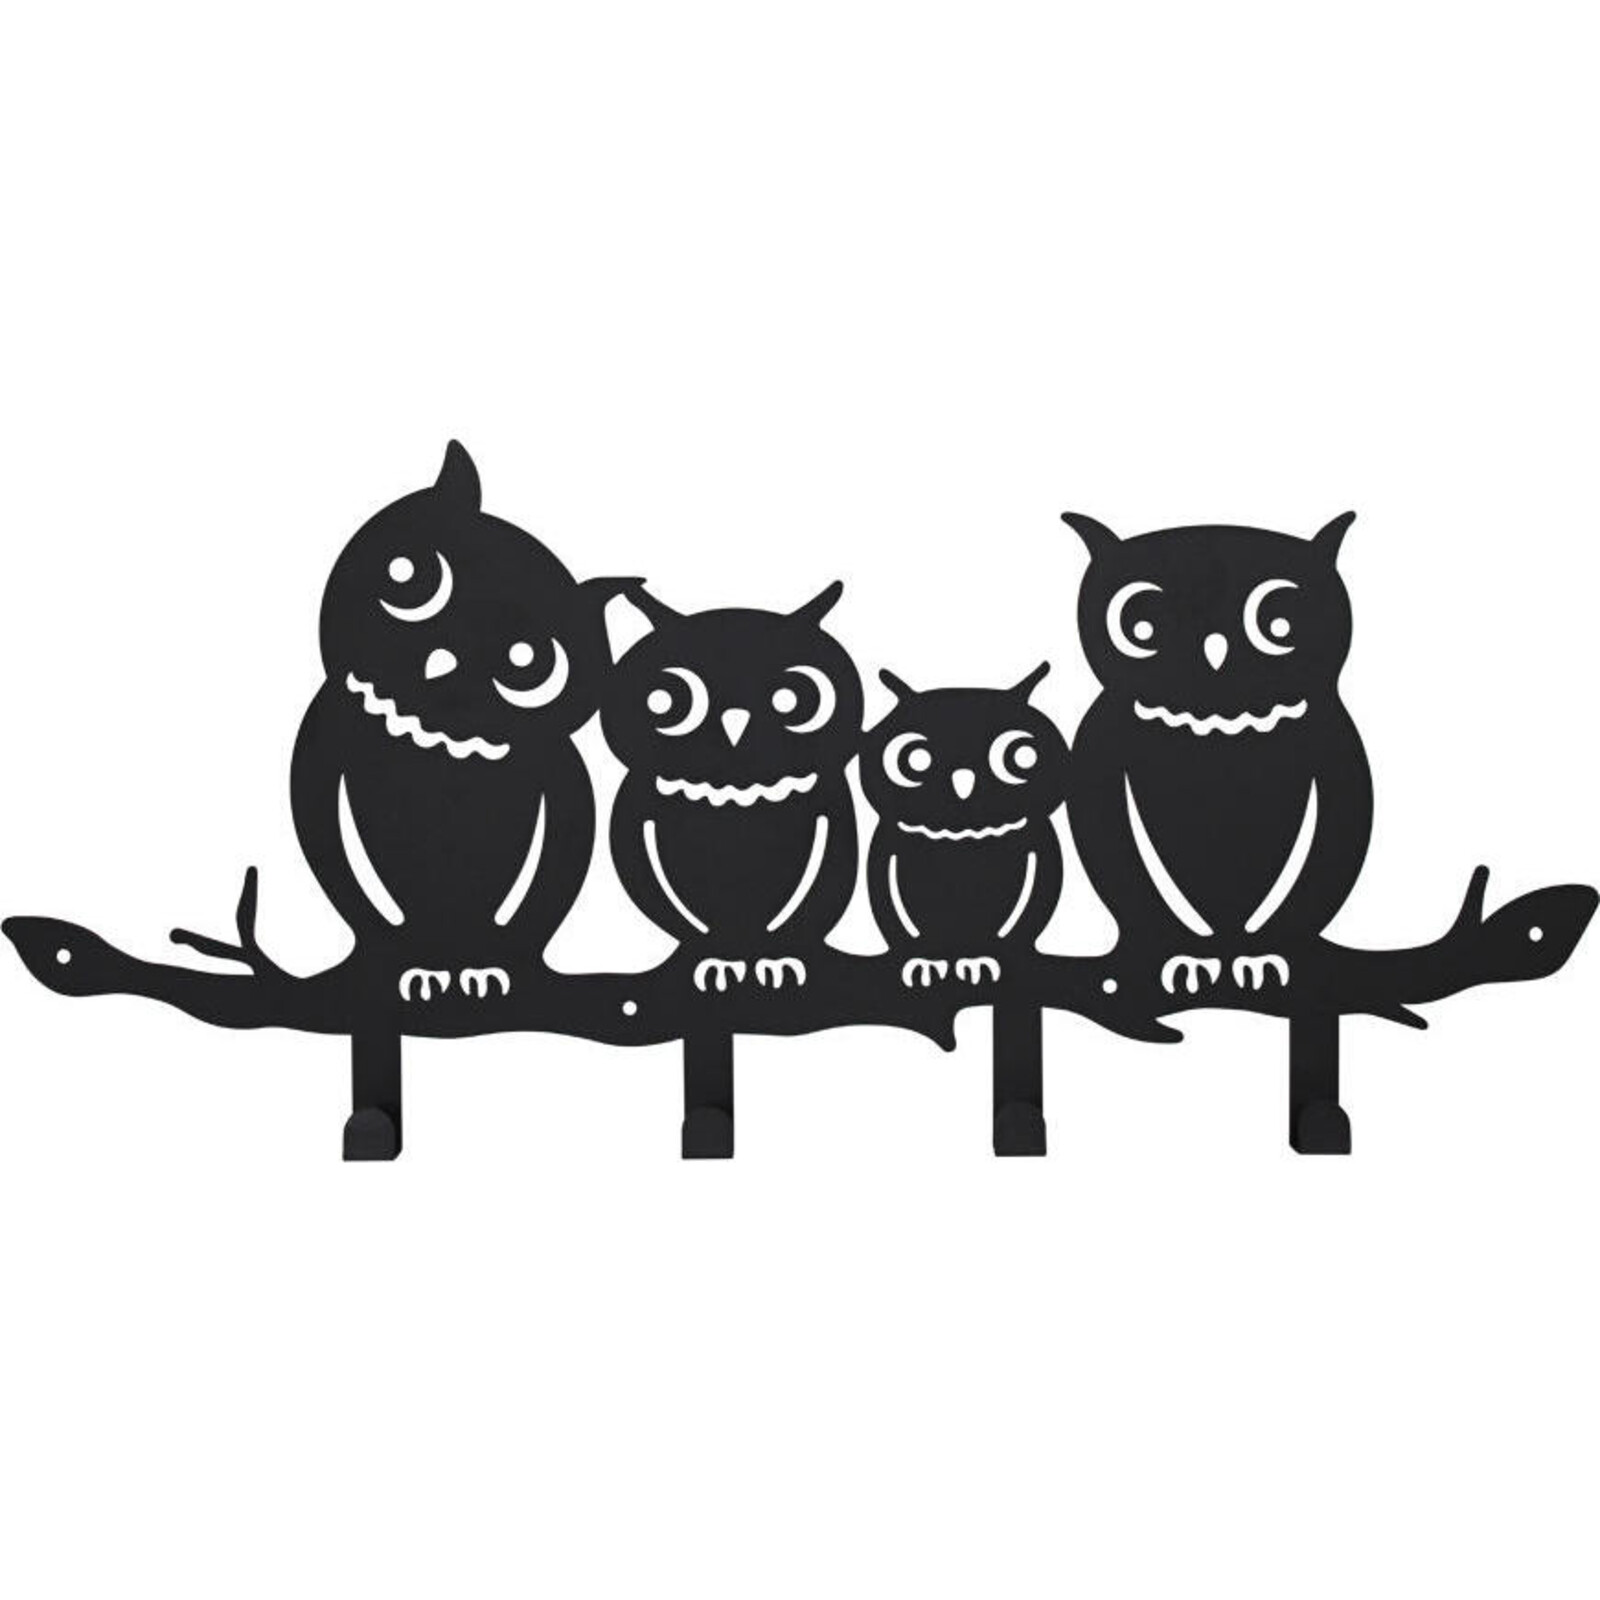 Hooks Owl Family